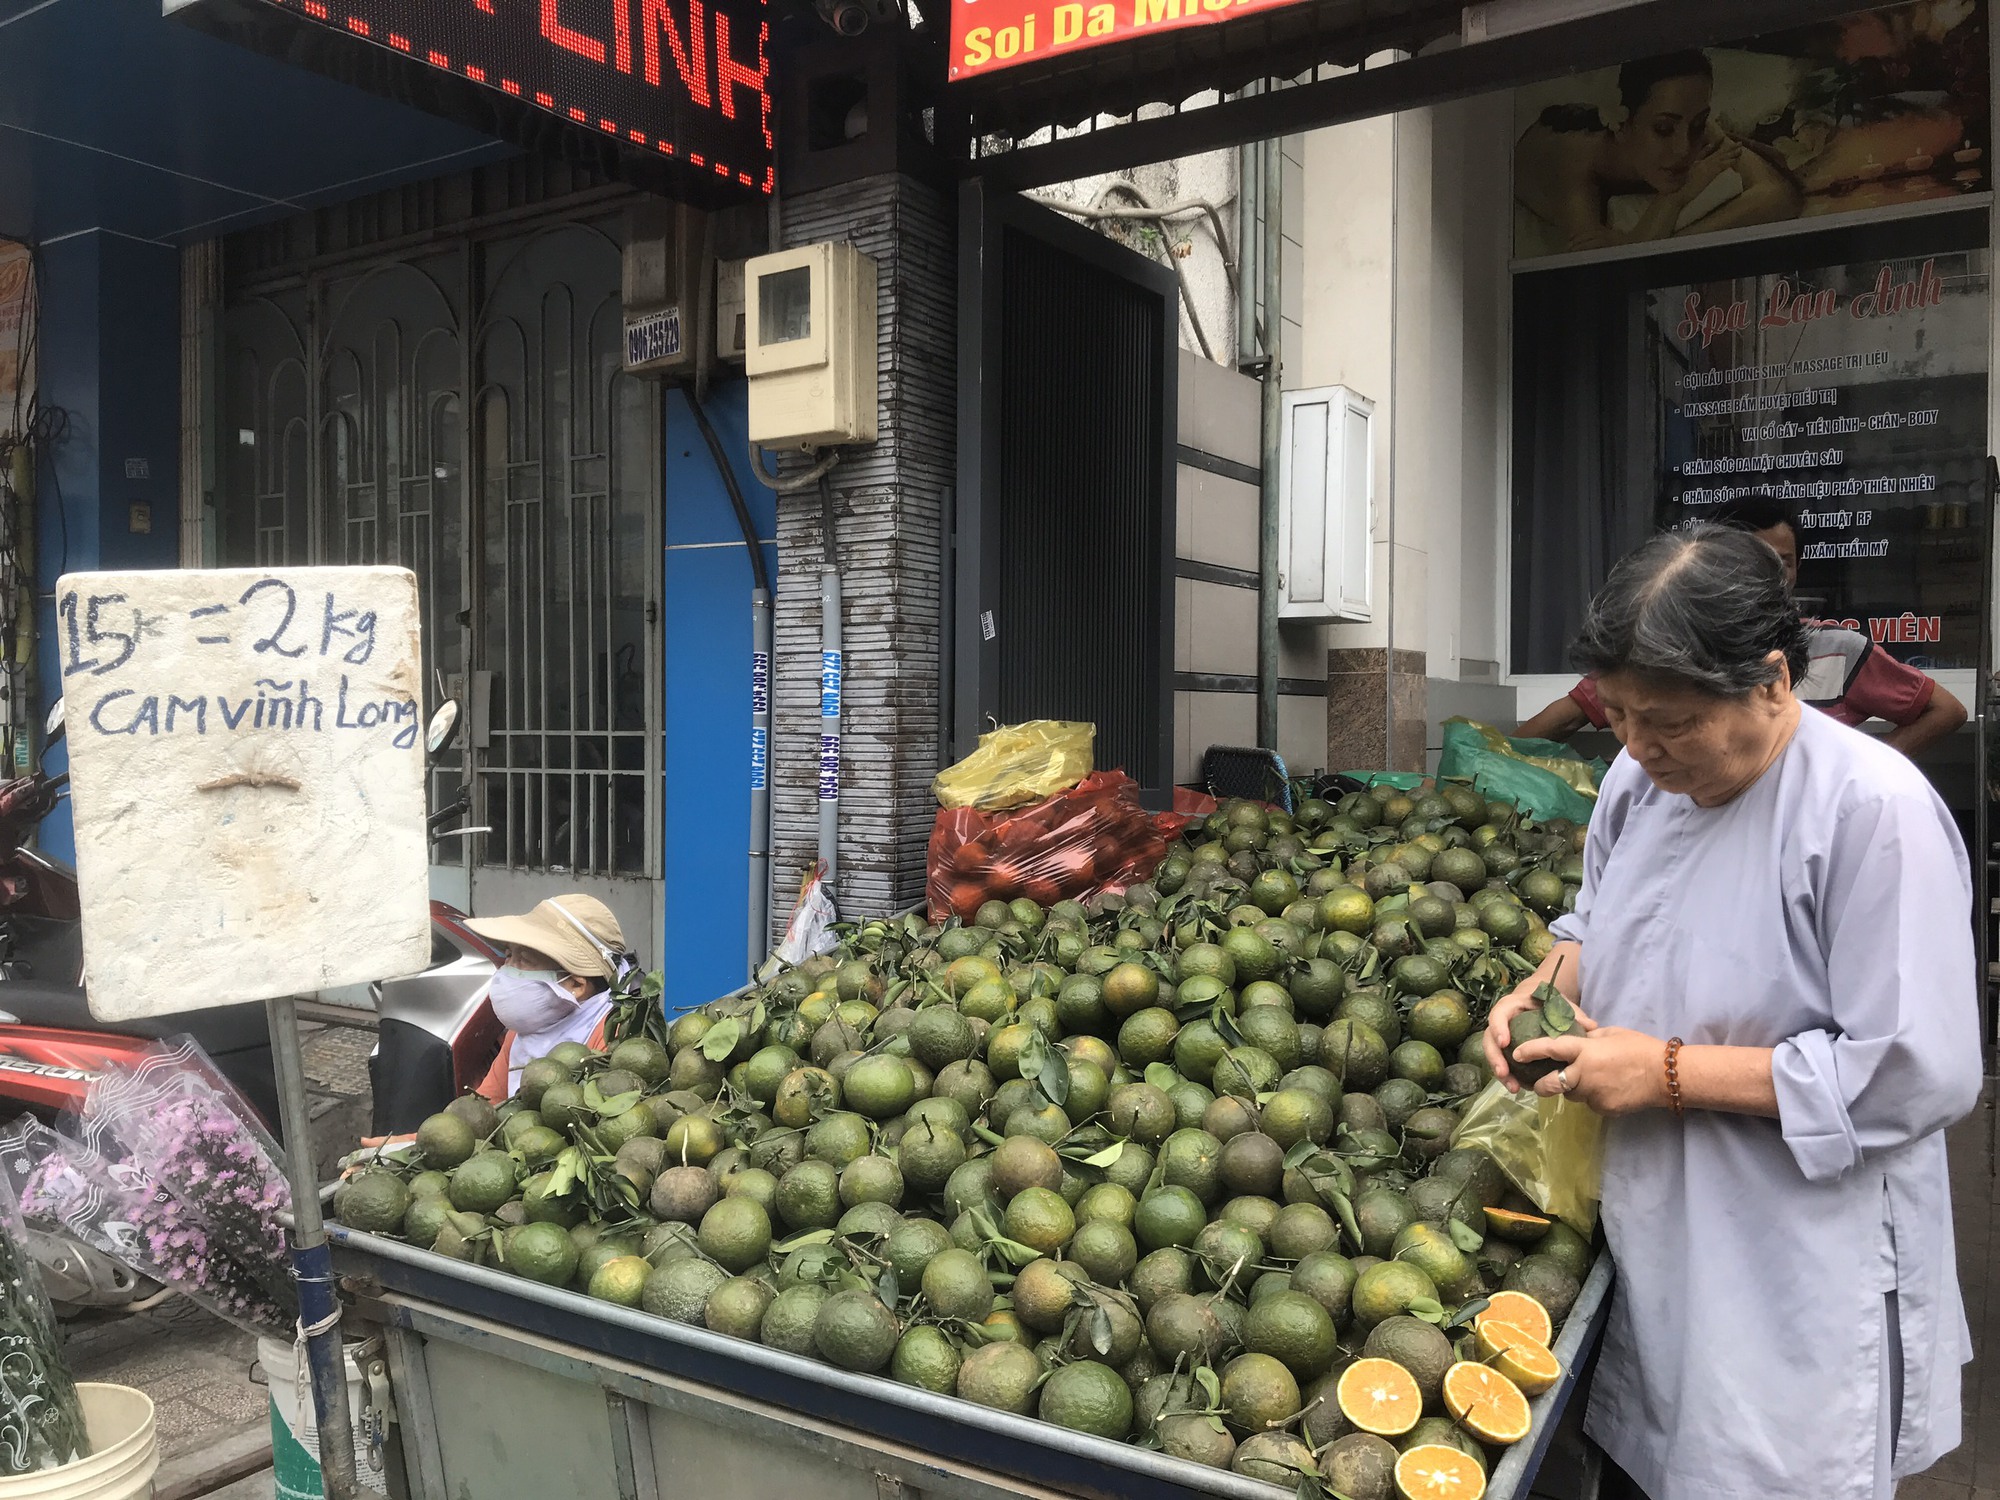 Cam sành miền Tây rớt giá thê thảm, bán lẻ chỉ còn 5.000 đồng/kg, người Sài Gòn thi nhau bán cam - Ảnh 1.